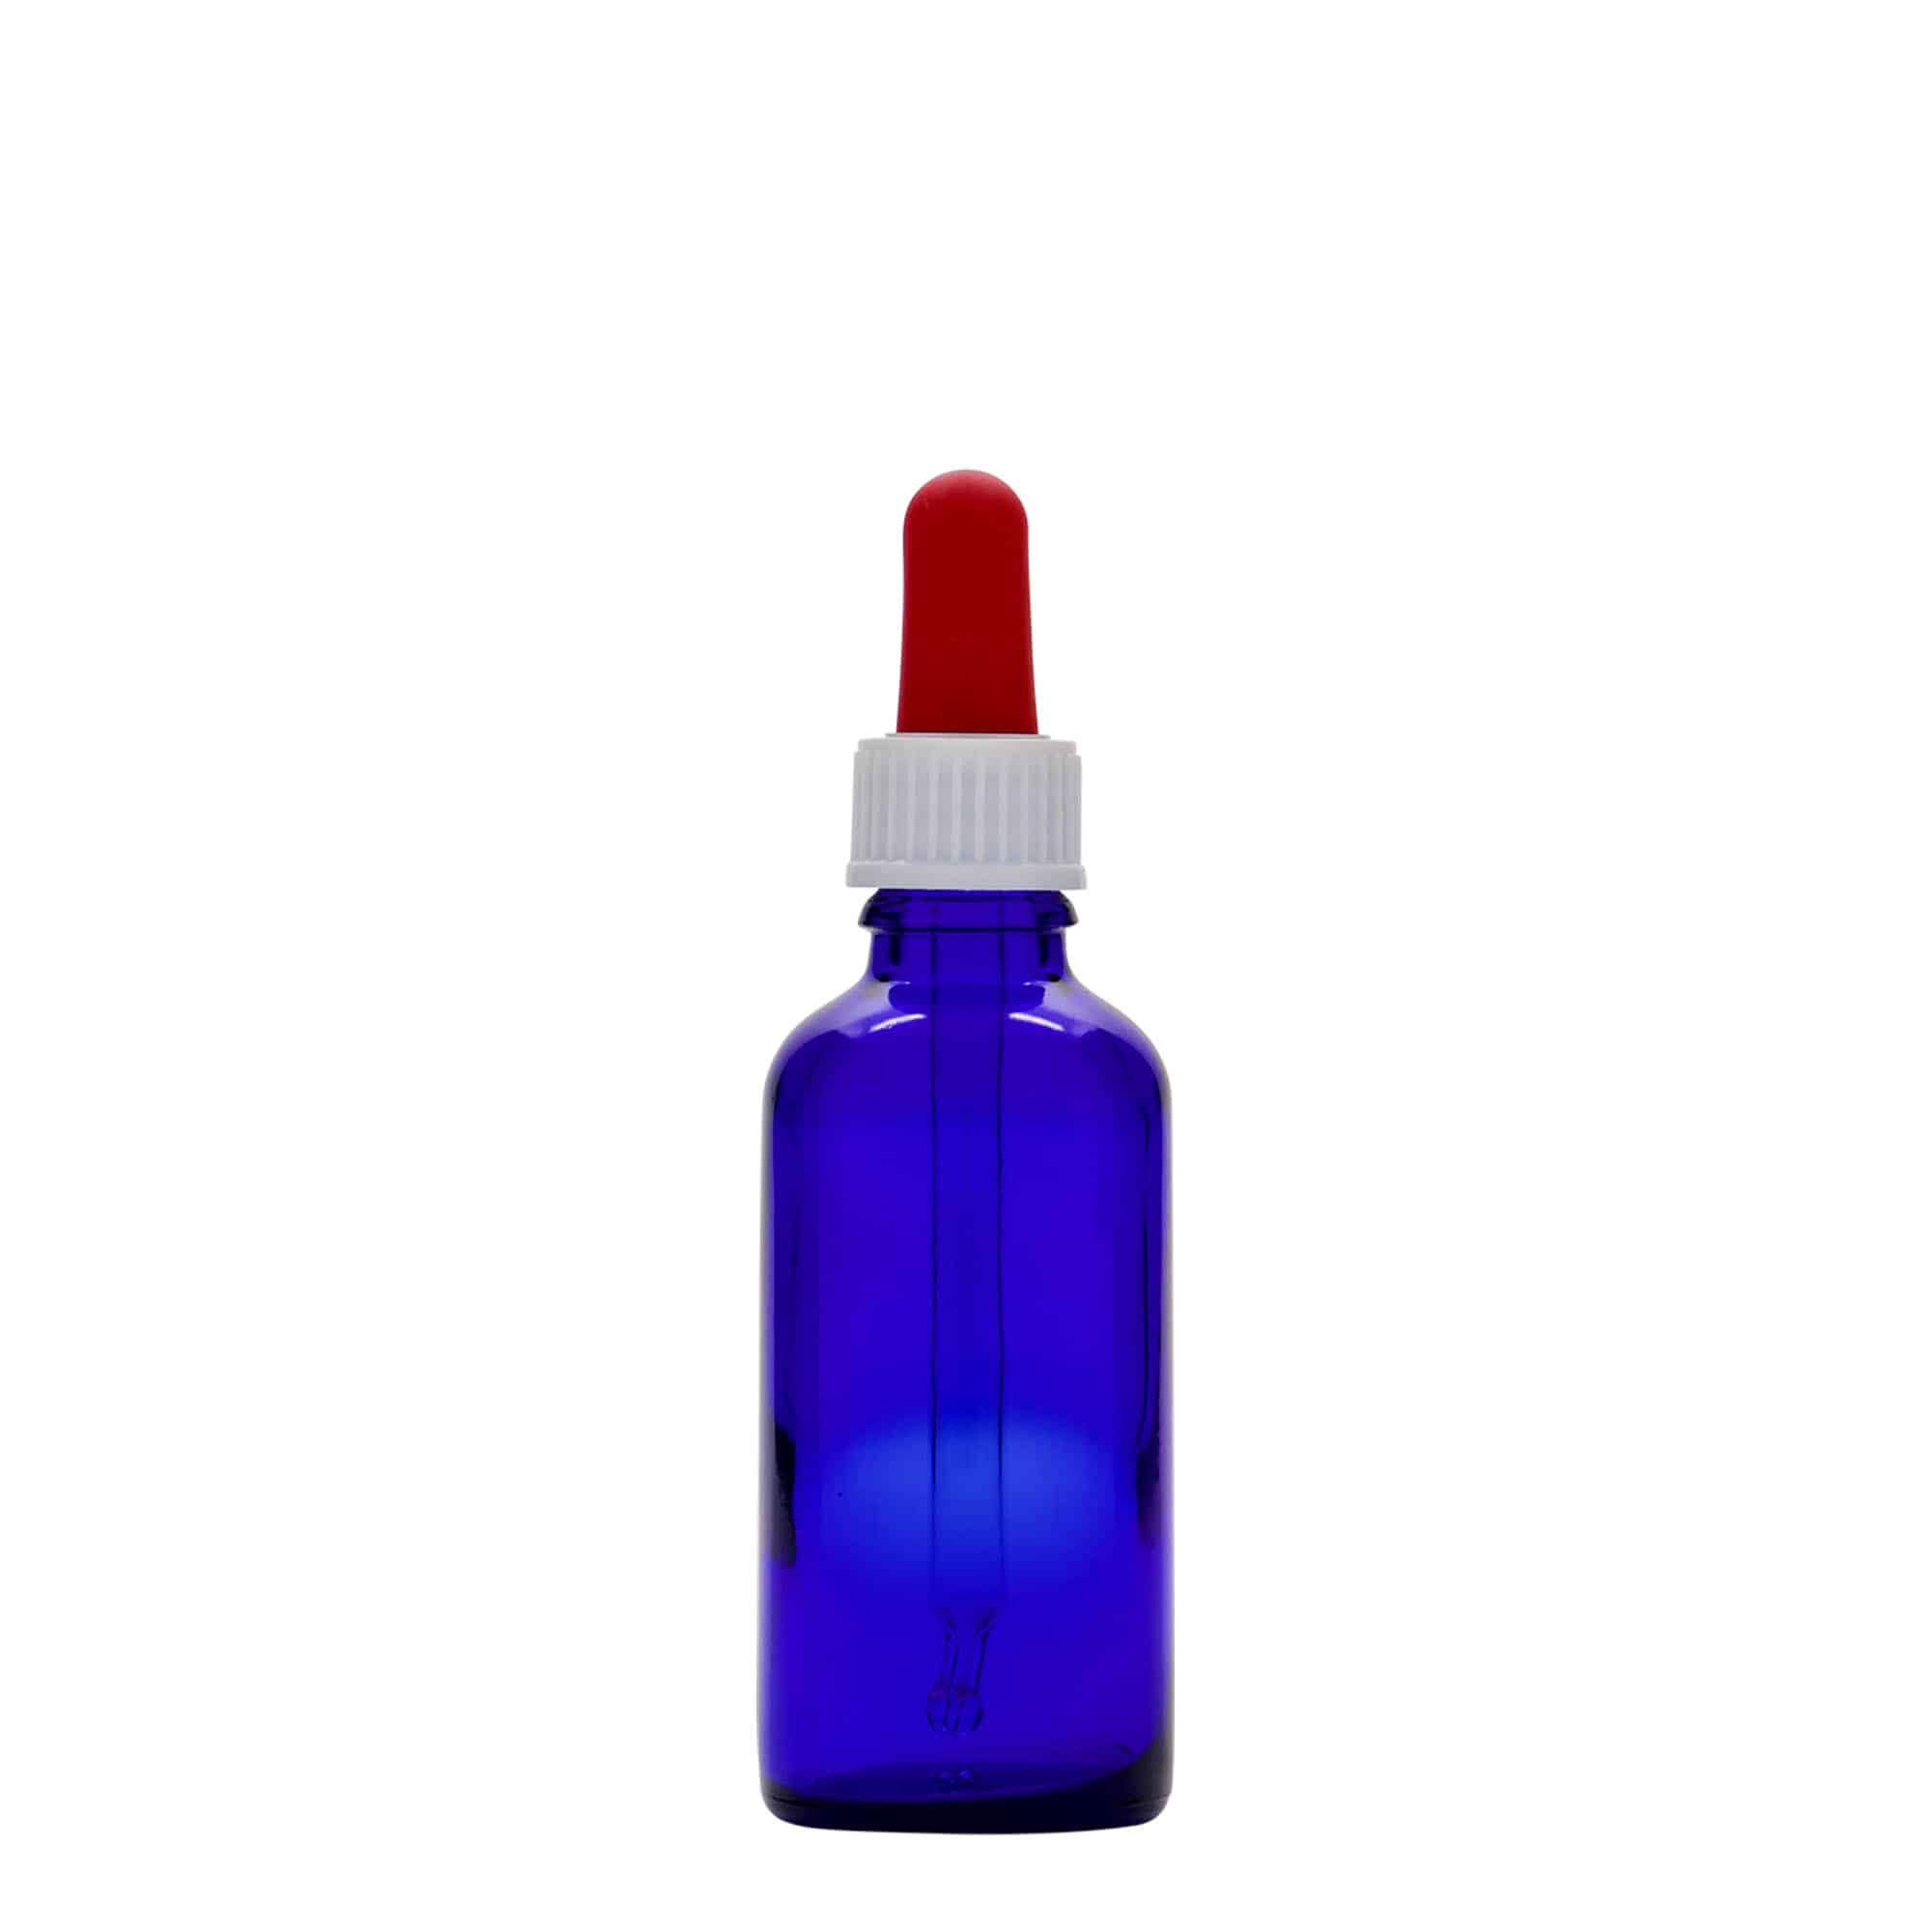 50 ml Flacone con contagocce , vetro, blu reale-rosso, imboccatura: DIN 18